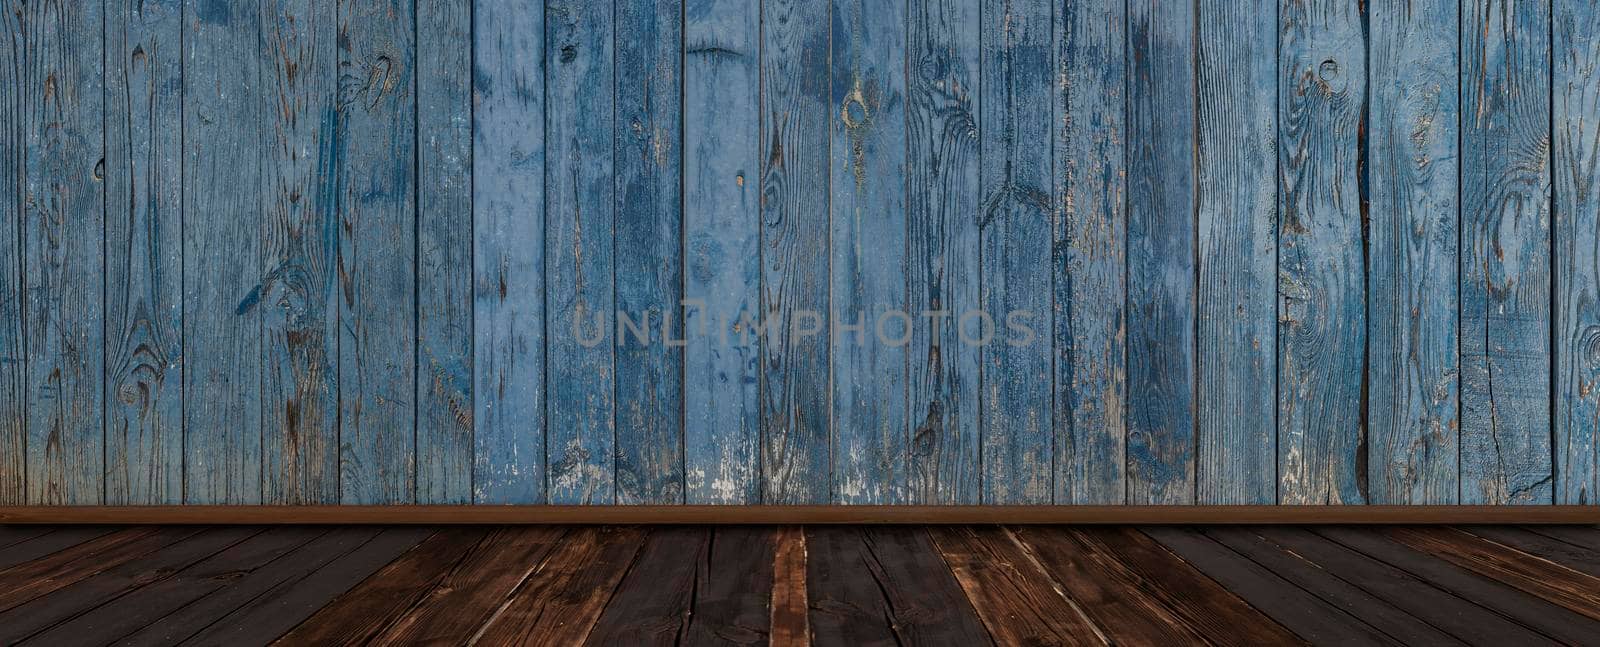 old wooden interior, grunge background by inxti